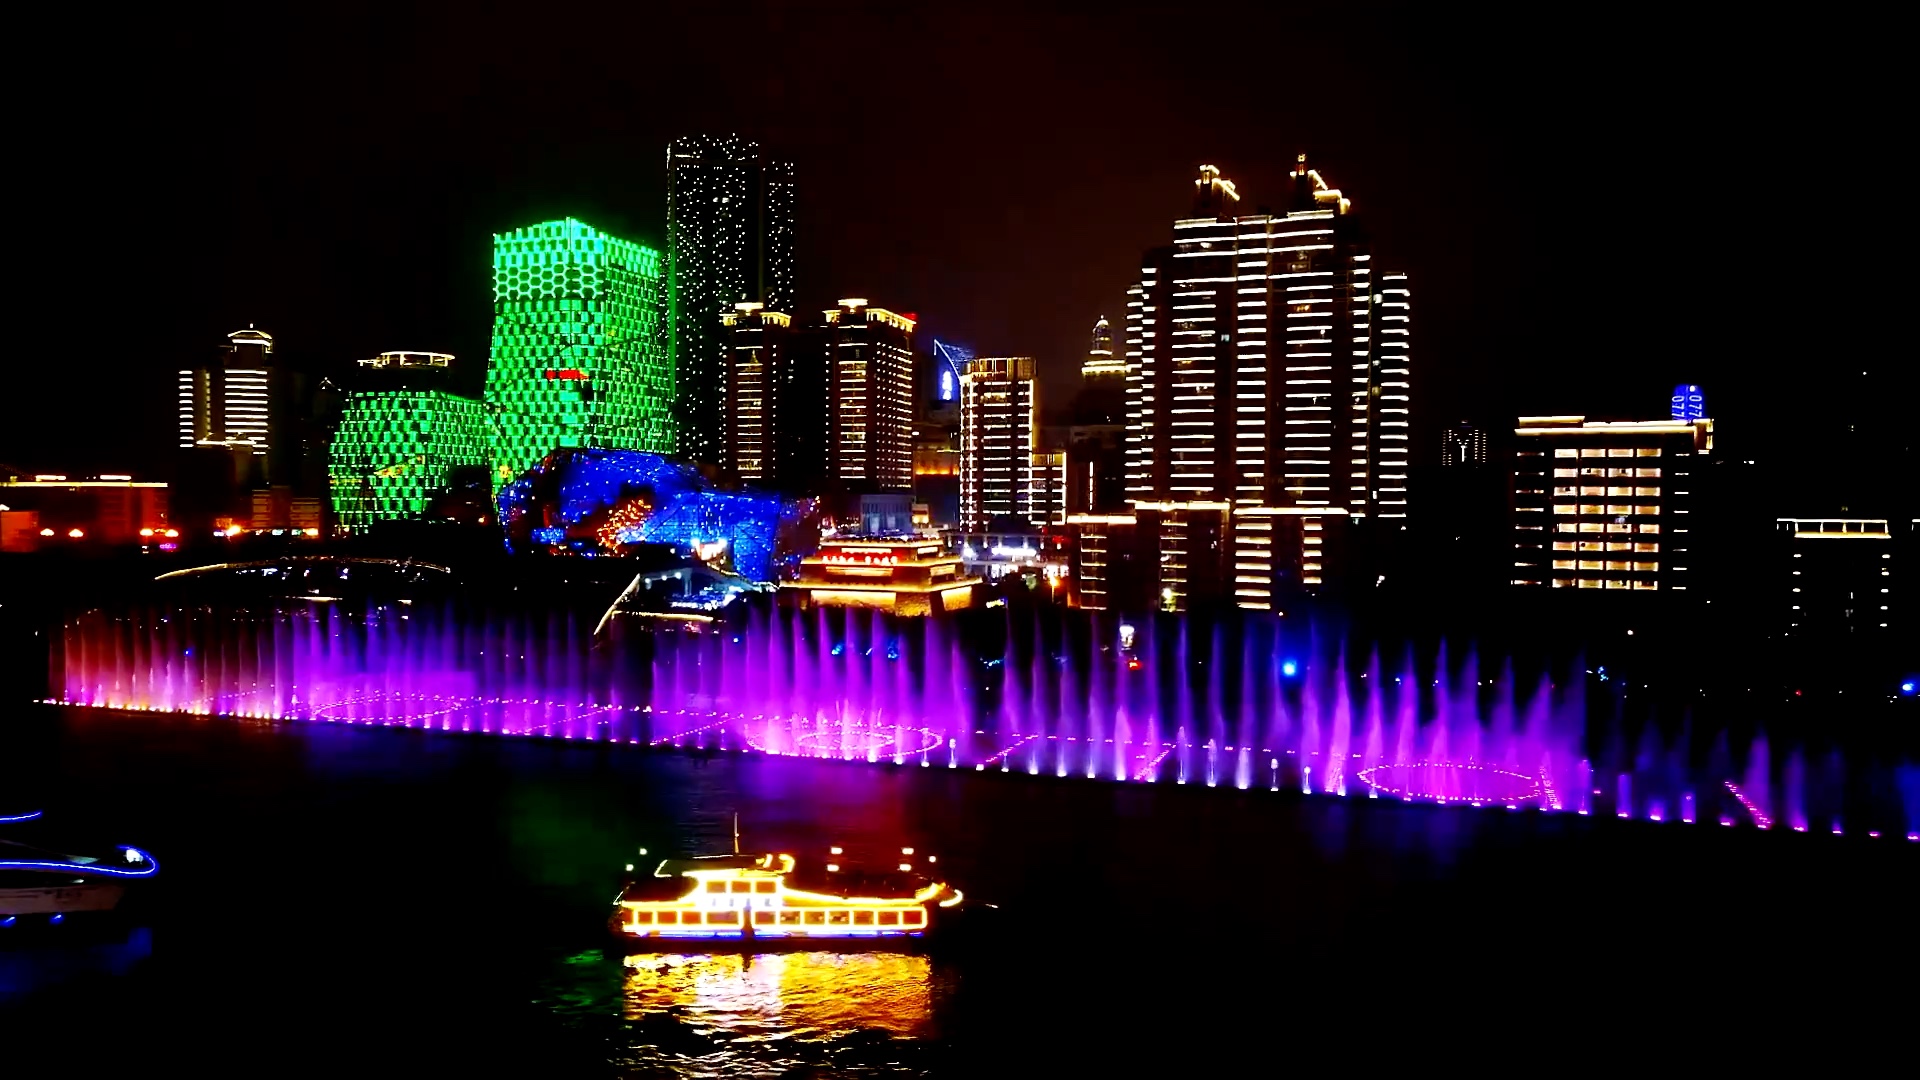 柳江大型音乐喷泉图片